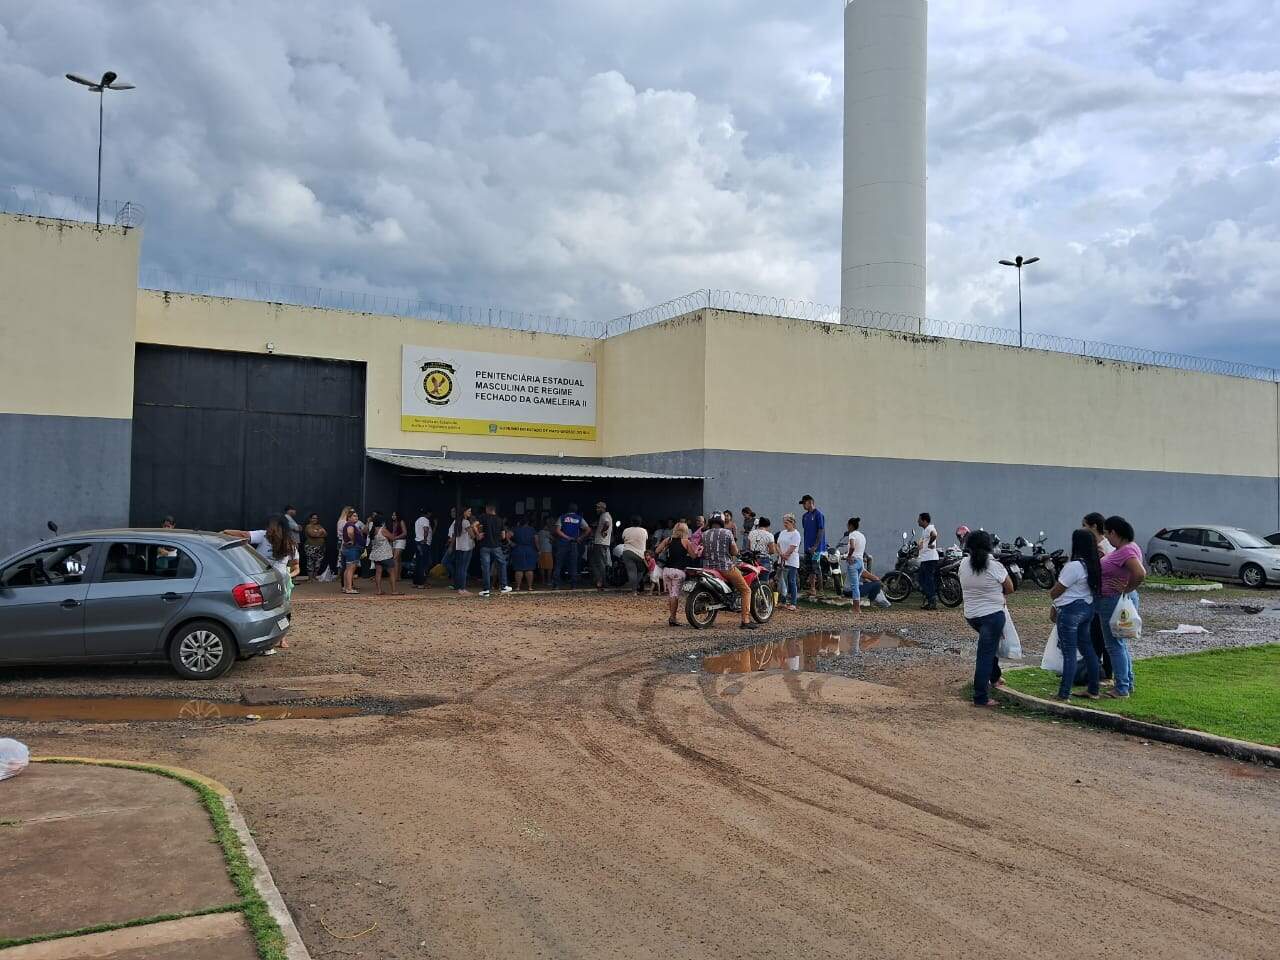 Famílias reclamam de espera de 3h para entregar pertences à presos na Gameleira